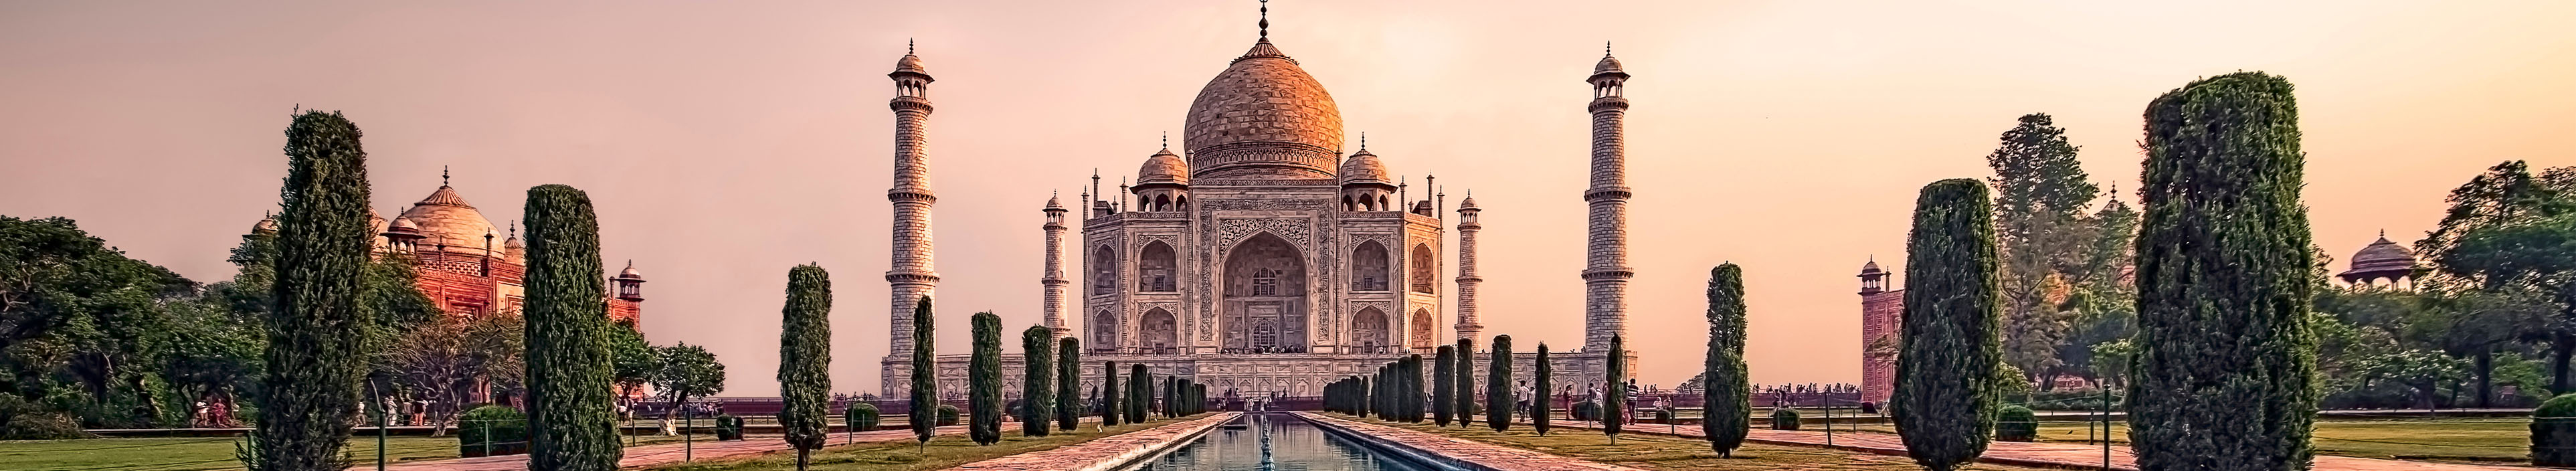 Das Taj Mahal in Indien